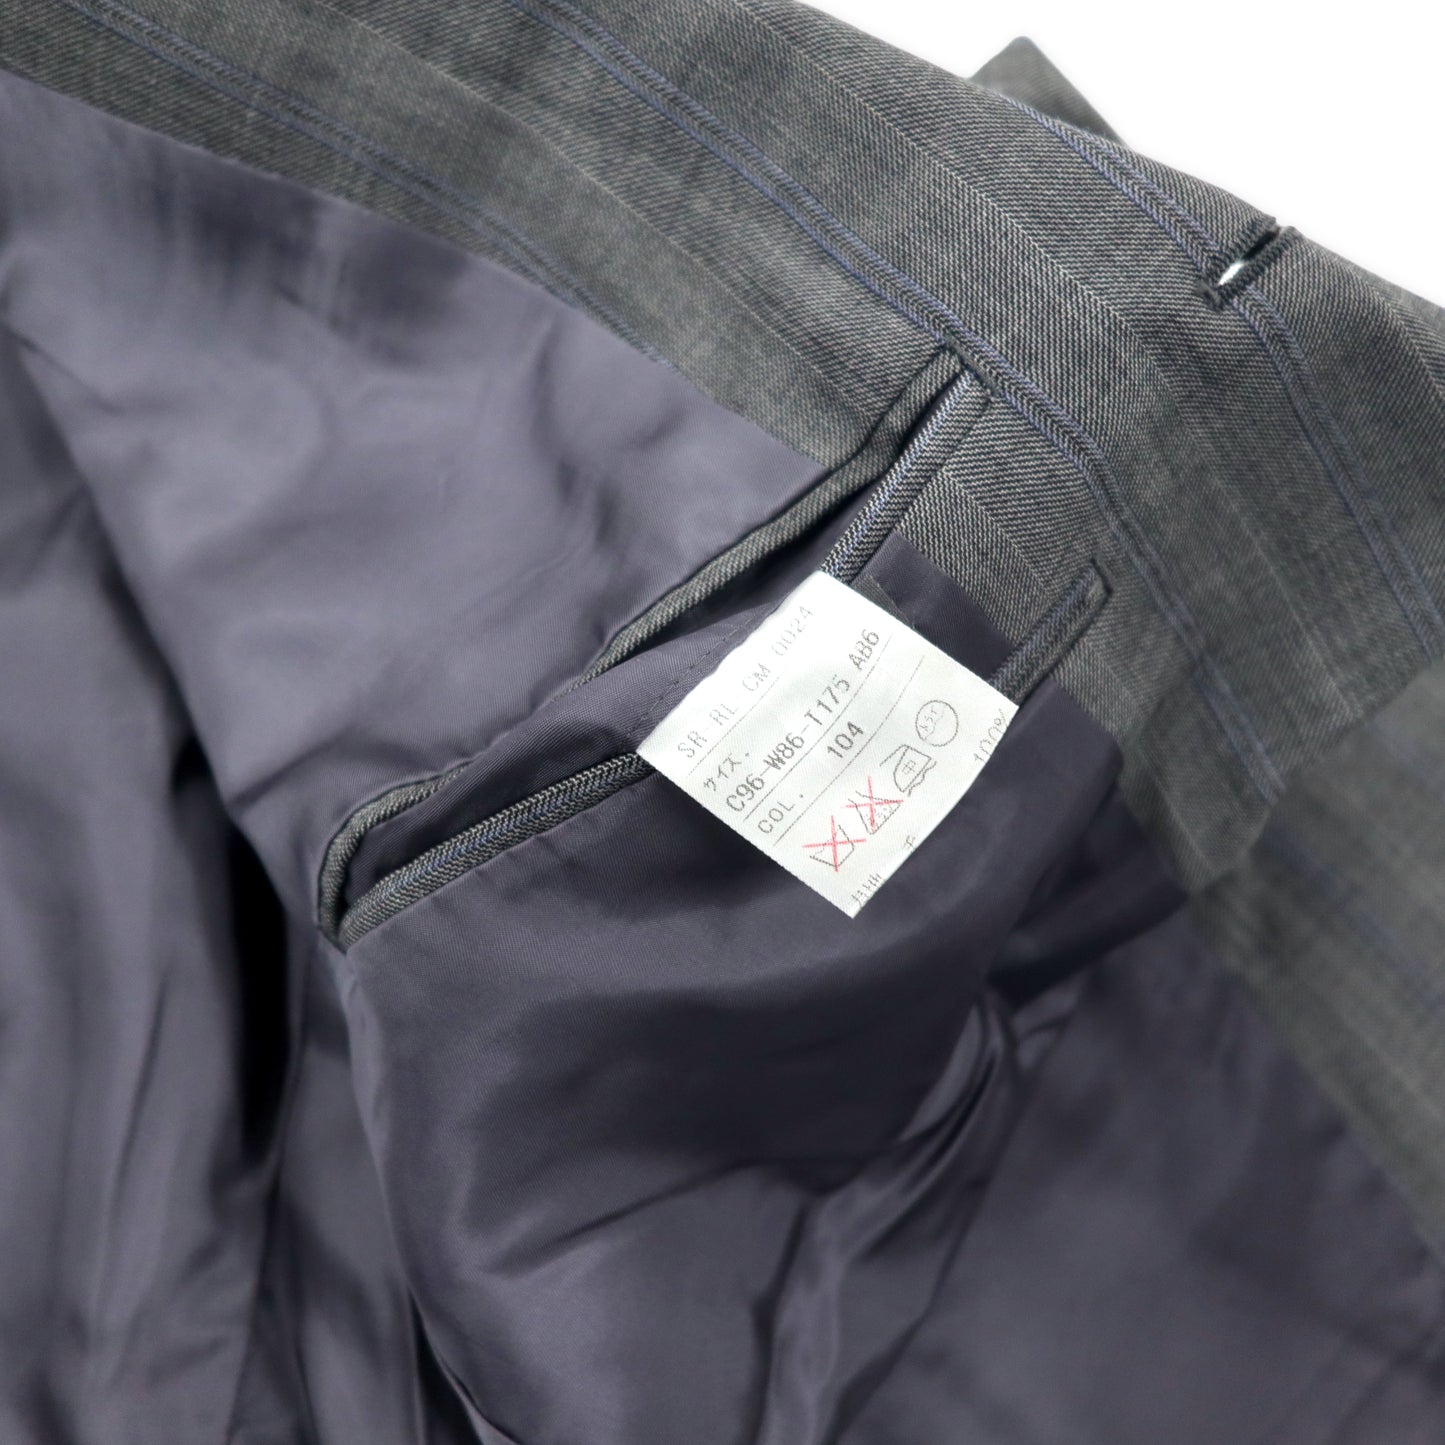 Polo by Ralph Lauren スーツ セットアップ T175 AB6 グレー ストライプ ウール 日本製